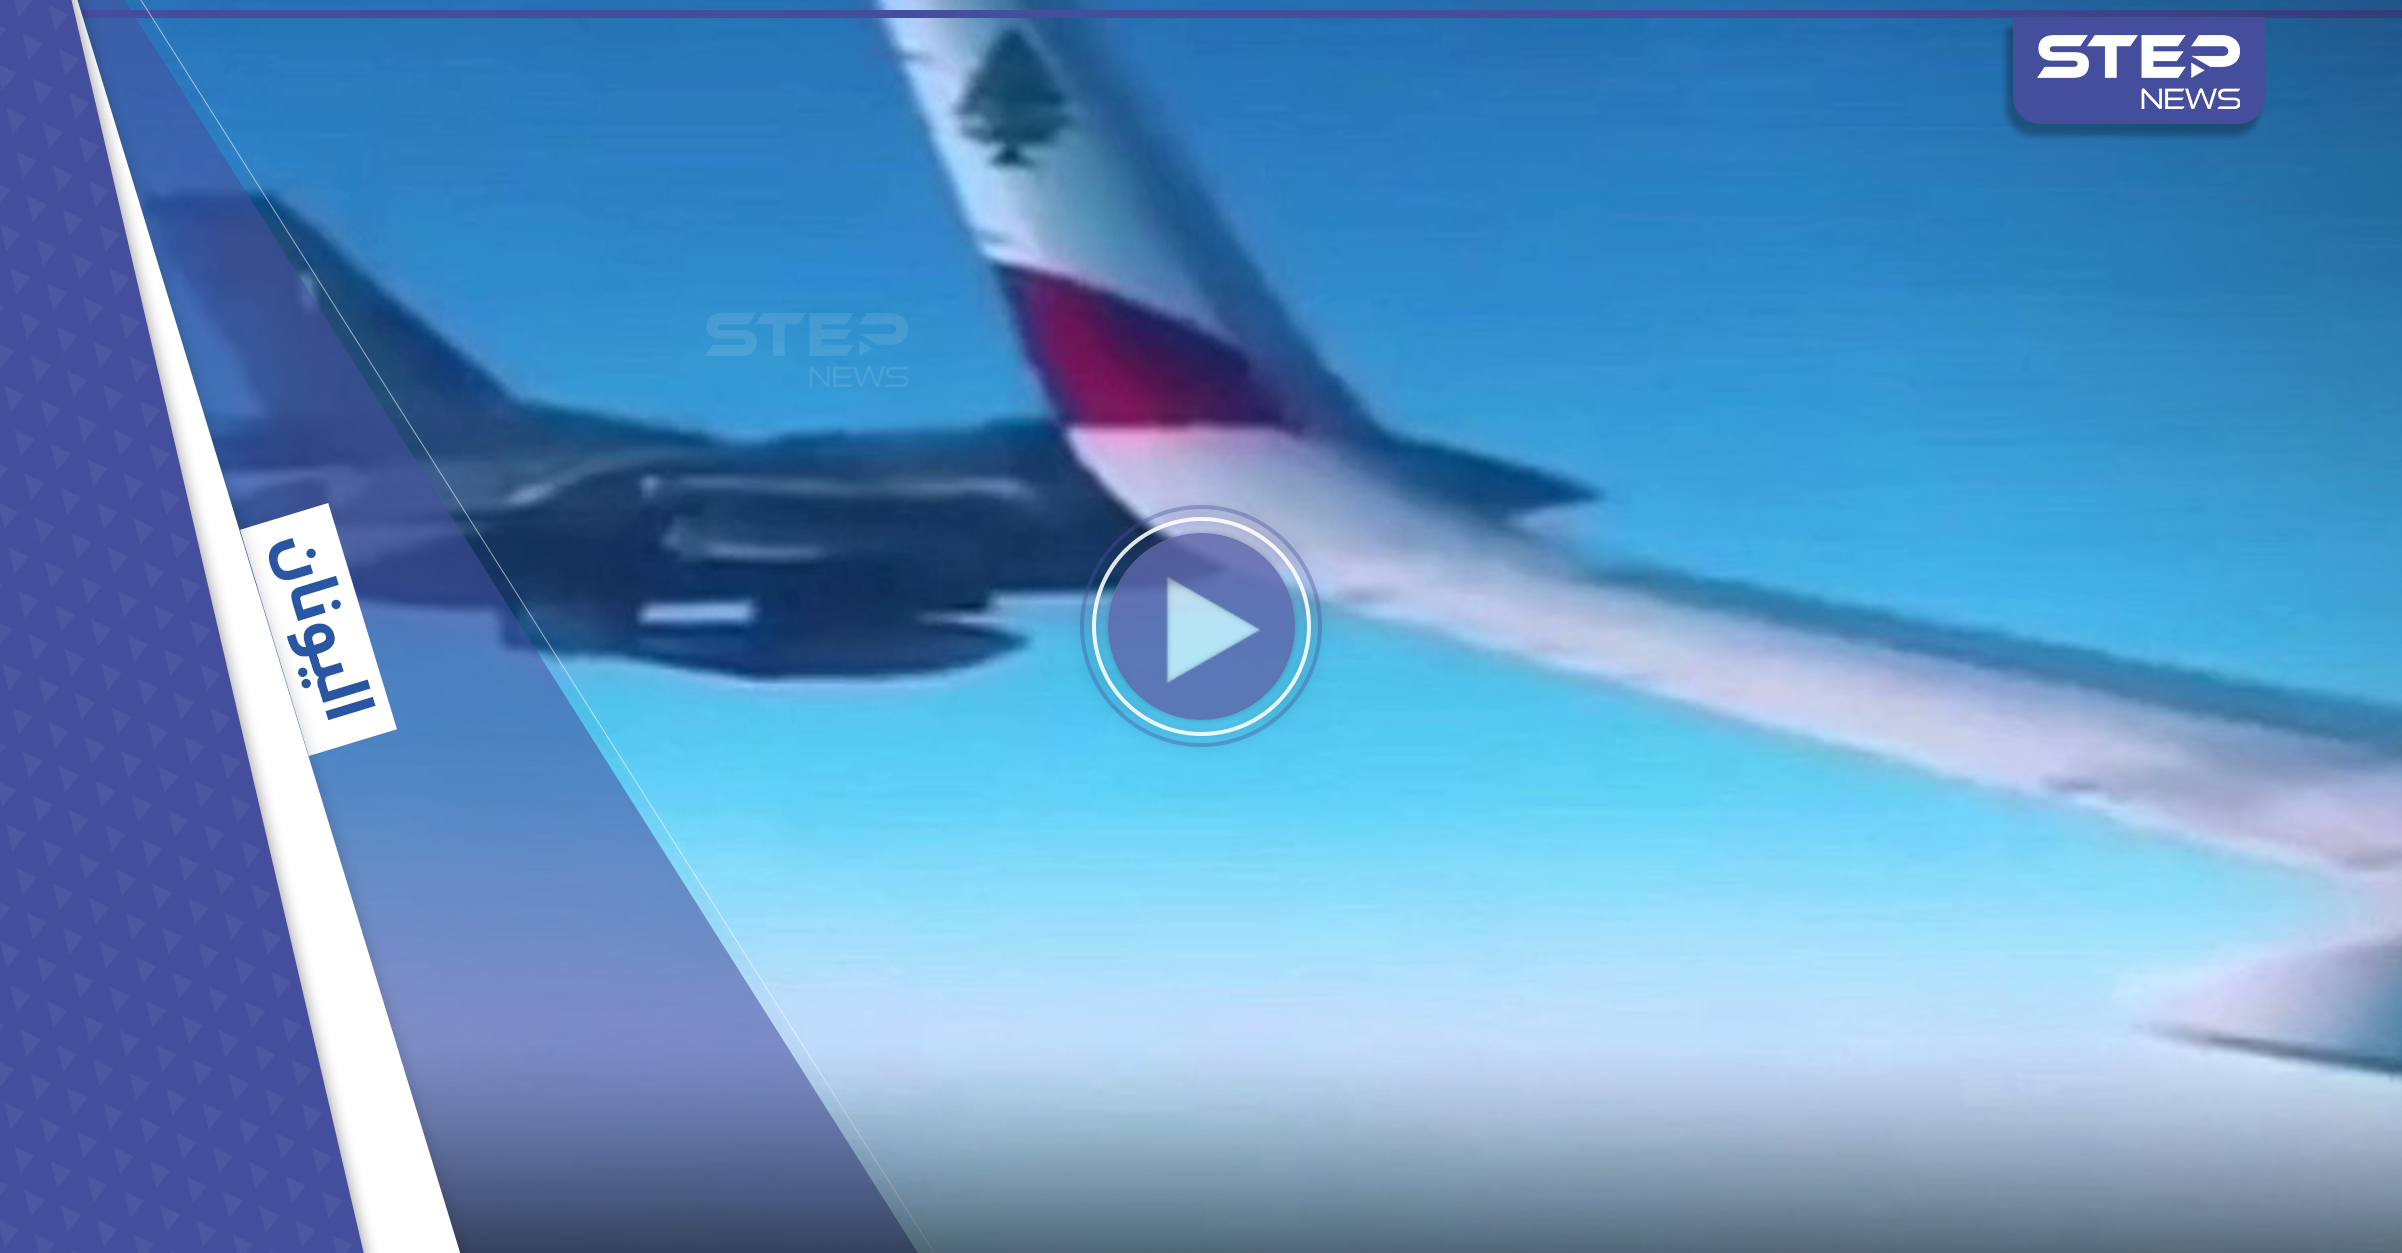 بالفيديو|| طائرة لبنانية تستنفر مقاتلات الناتو الحربية في سماء اليونان